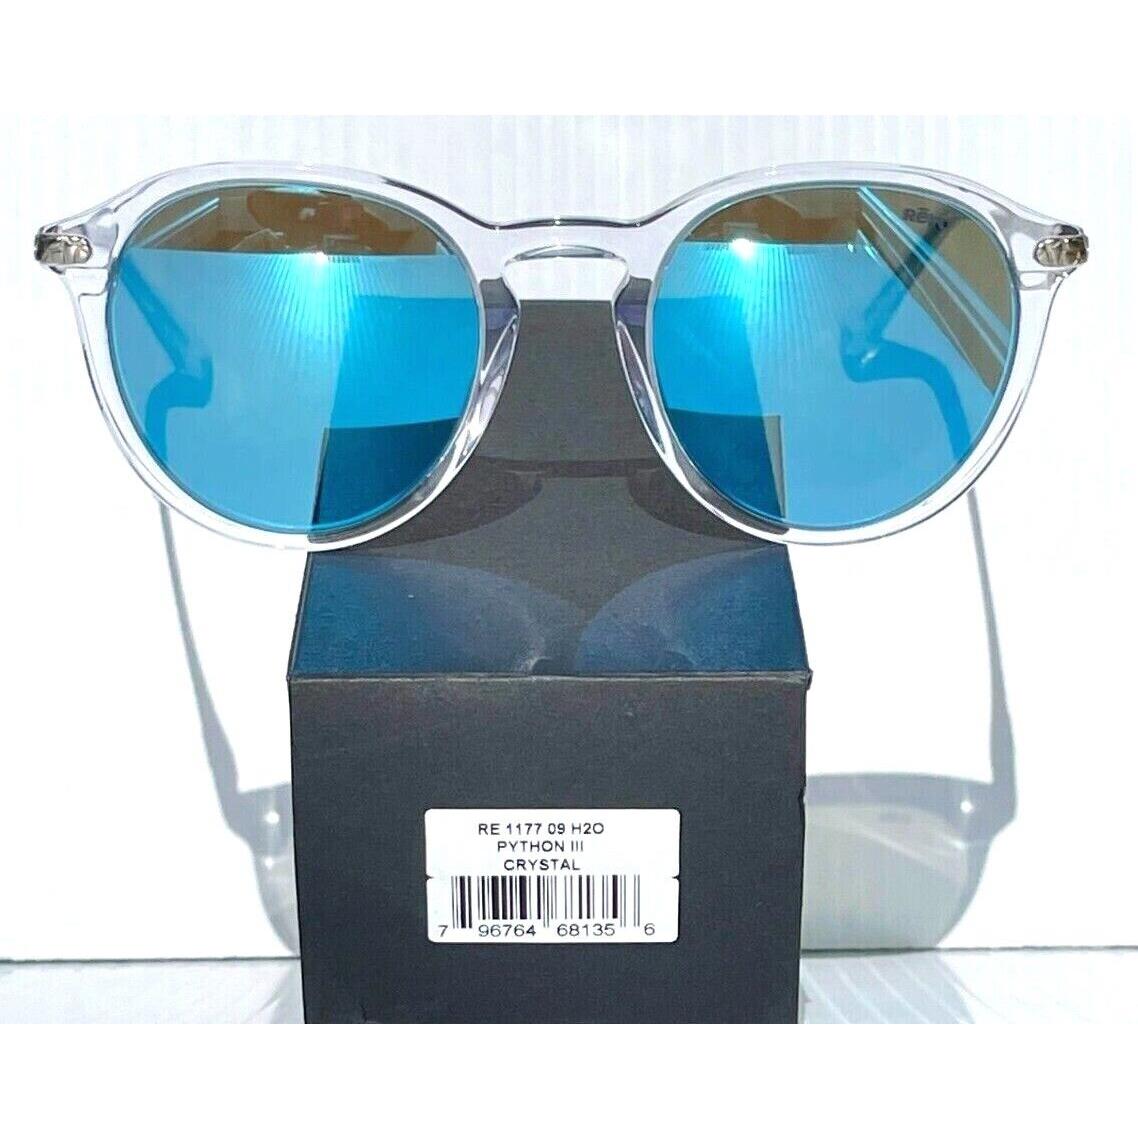 Revo sunglasses PYTHON - Clear Frame, Blue Lens